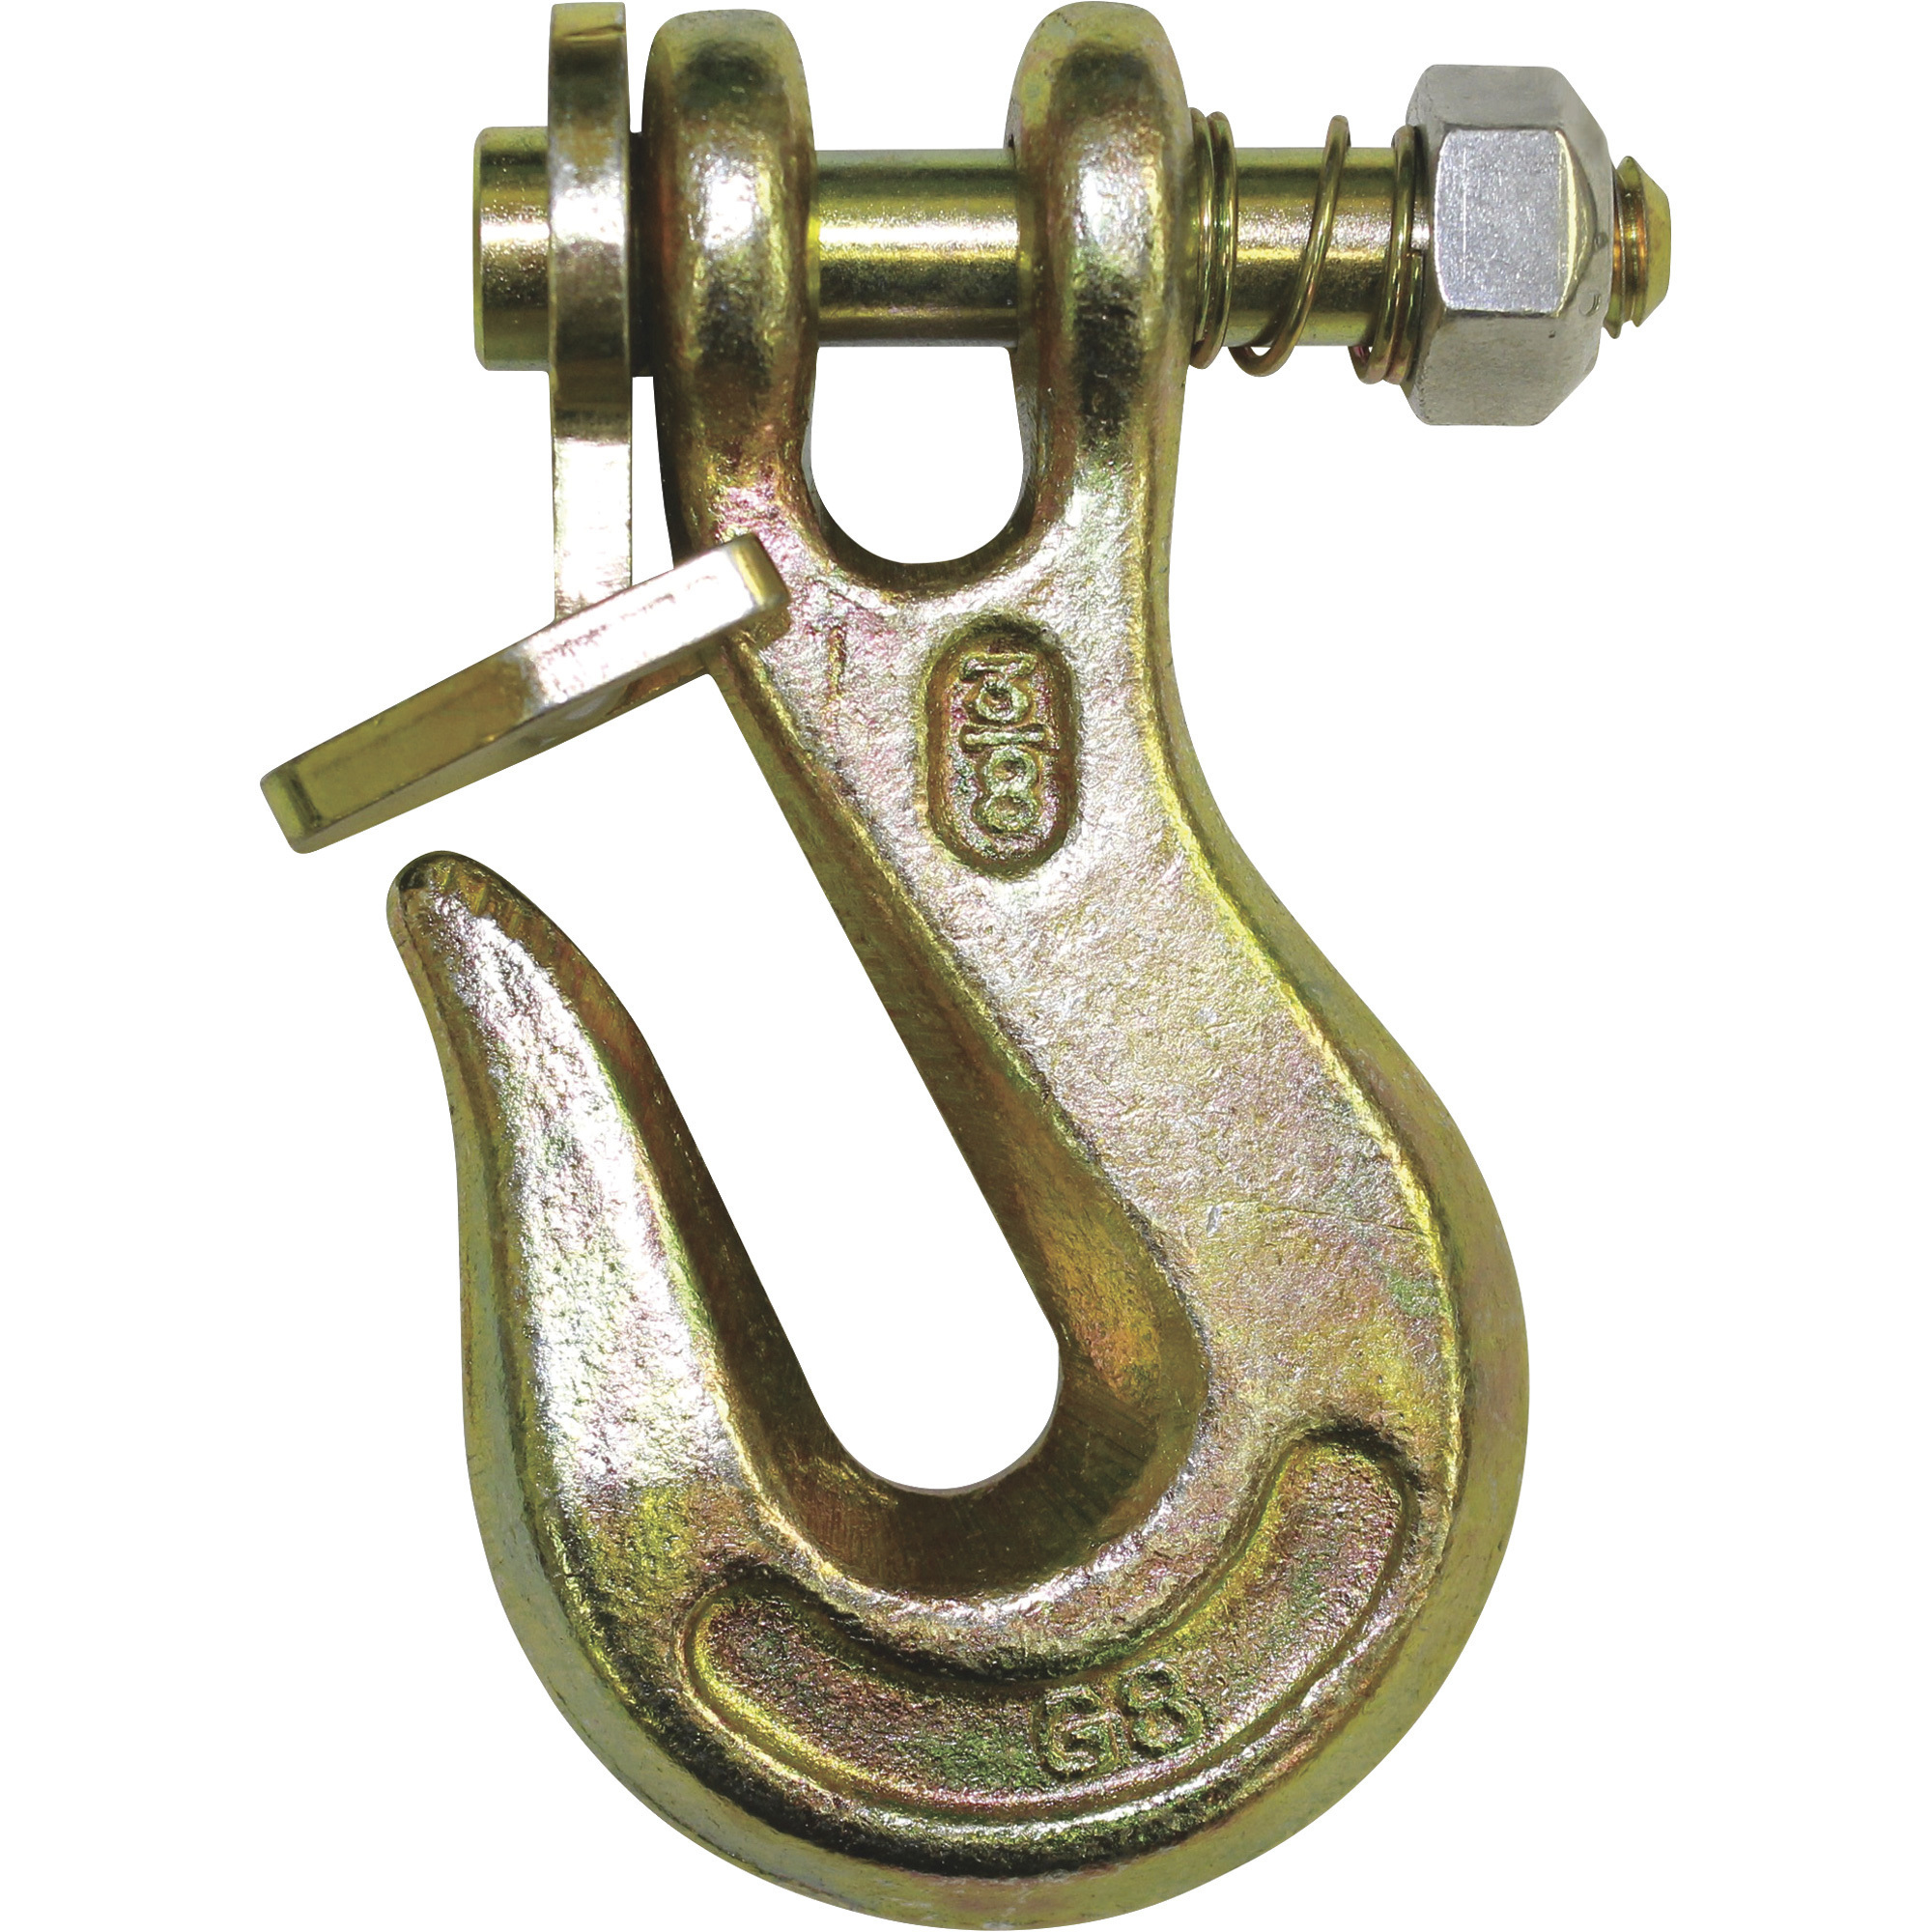 B/A Products Twist Lock Clevis Grab Hook â 5/16Inch, 4Inch L, 4,500-Lb. Capacity, Model G8-200-516